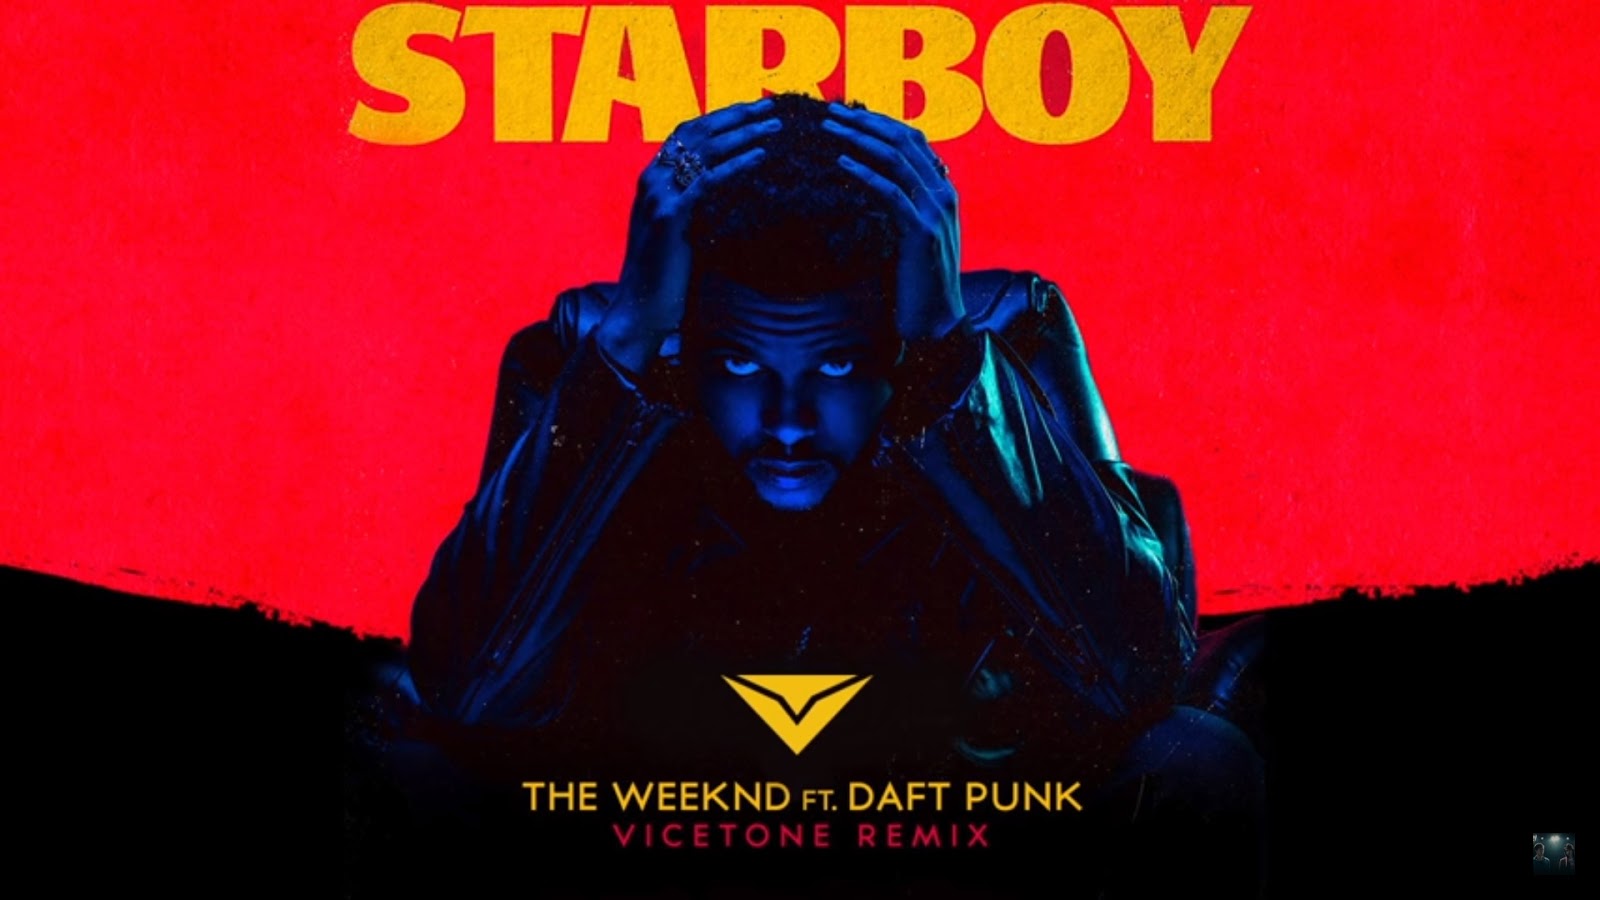 Star boy the weekend. Star boy the Weeknd. Starboy the Weeknd обложка. The weekend Daft Punk Starboy. Daft Punk the Weeknd.